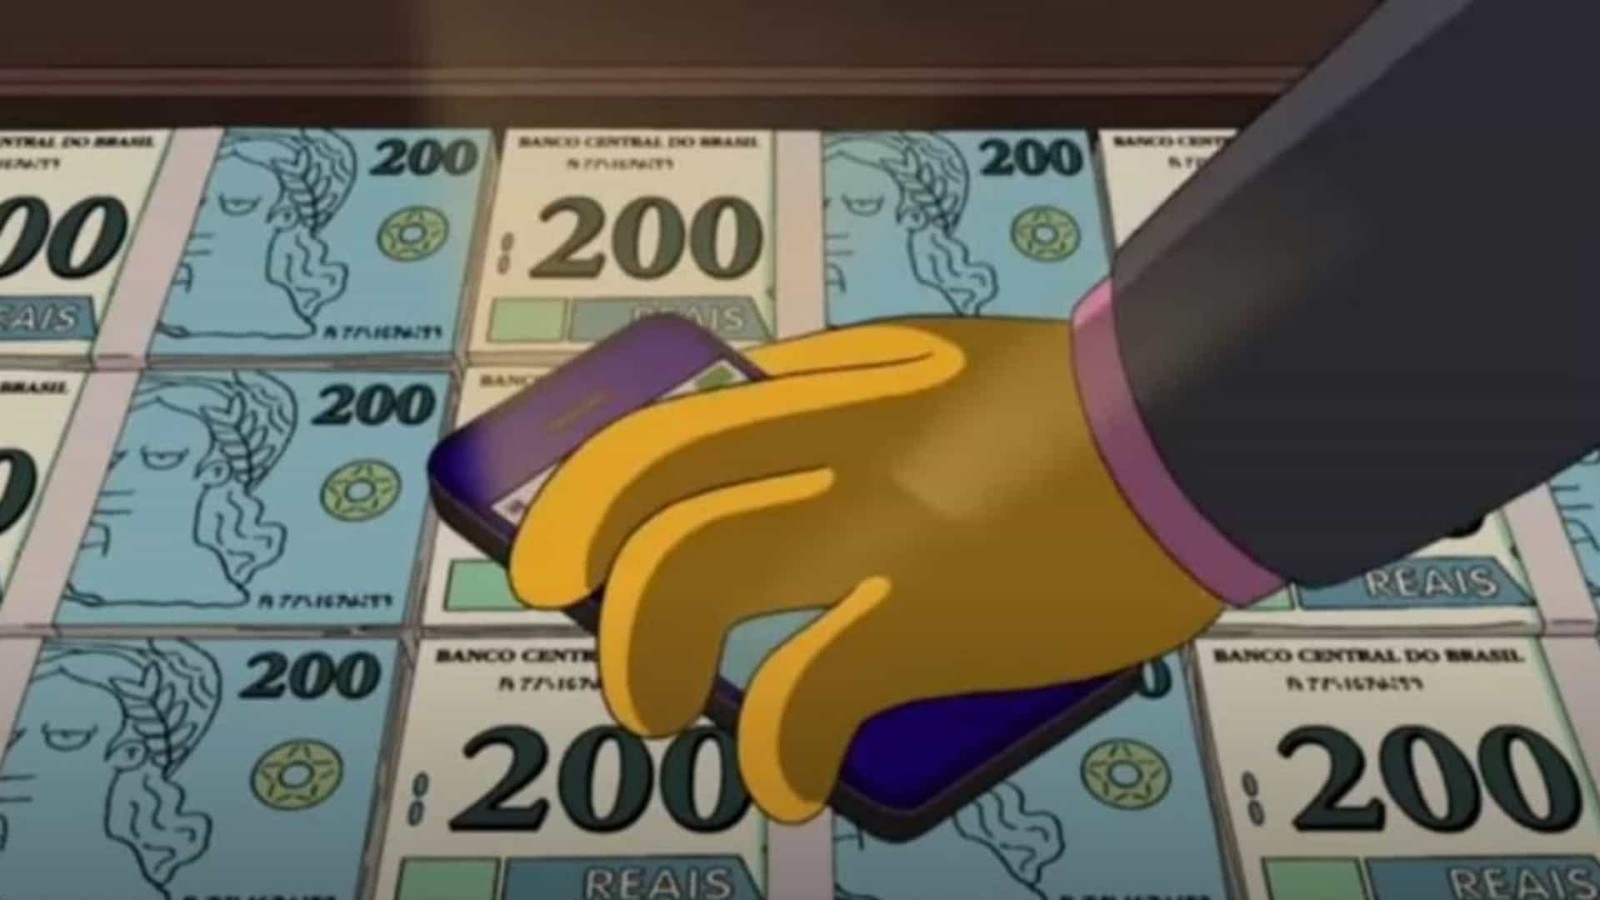 Internautas lembram que 'Os Simpsons' previram nota de R$ 200